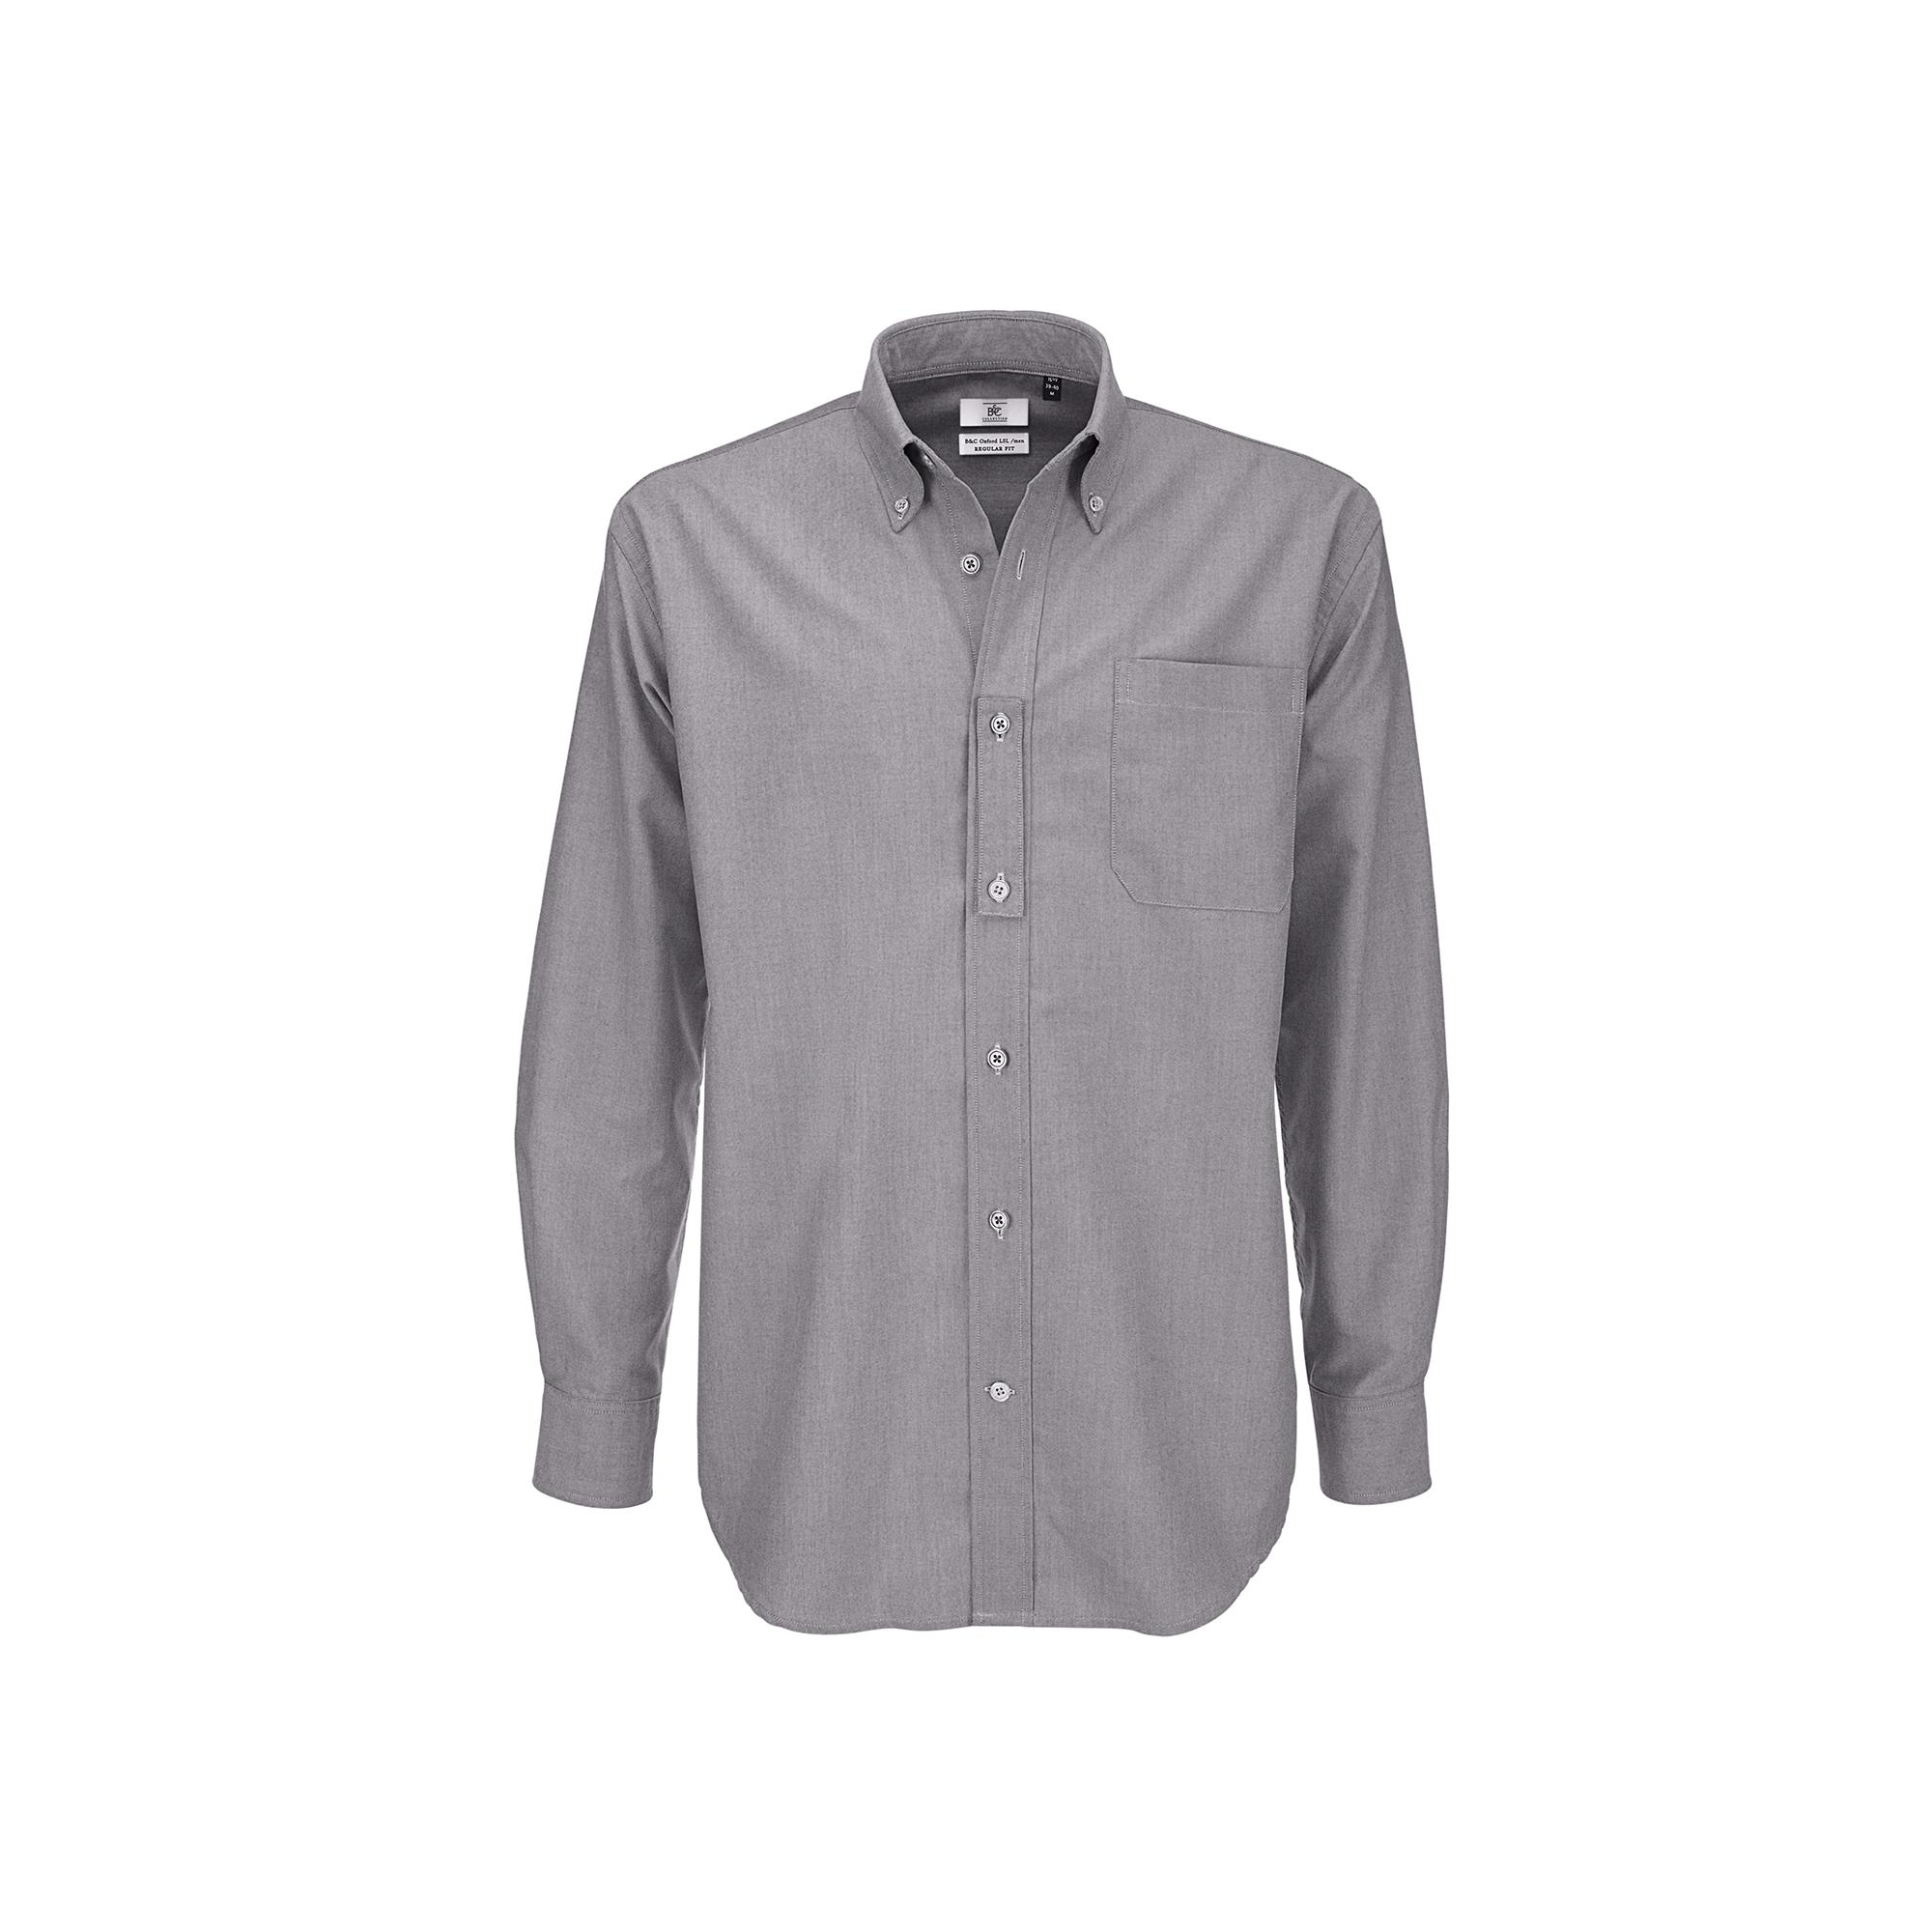 Рубашка мужская с длинным рукавом Oxford LSL/men, цвет серый, фото 1